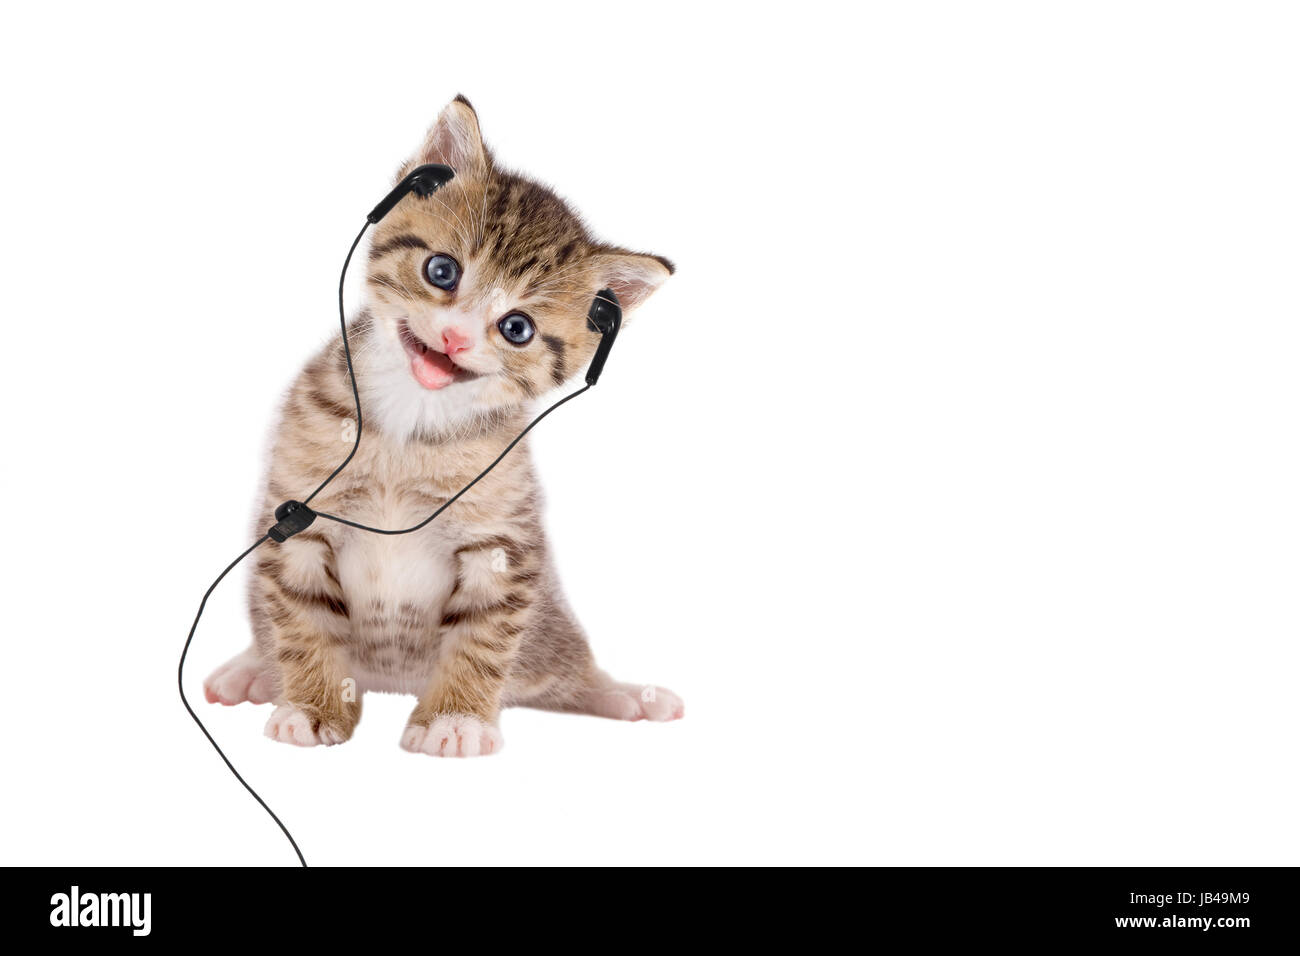 Junge Katze hört Musik über Kopfhörer / Headset auf weißem Hintergrund Stock Photo